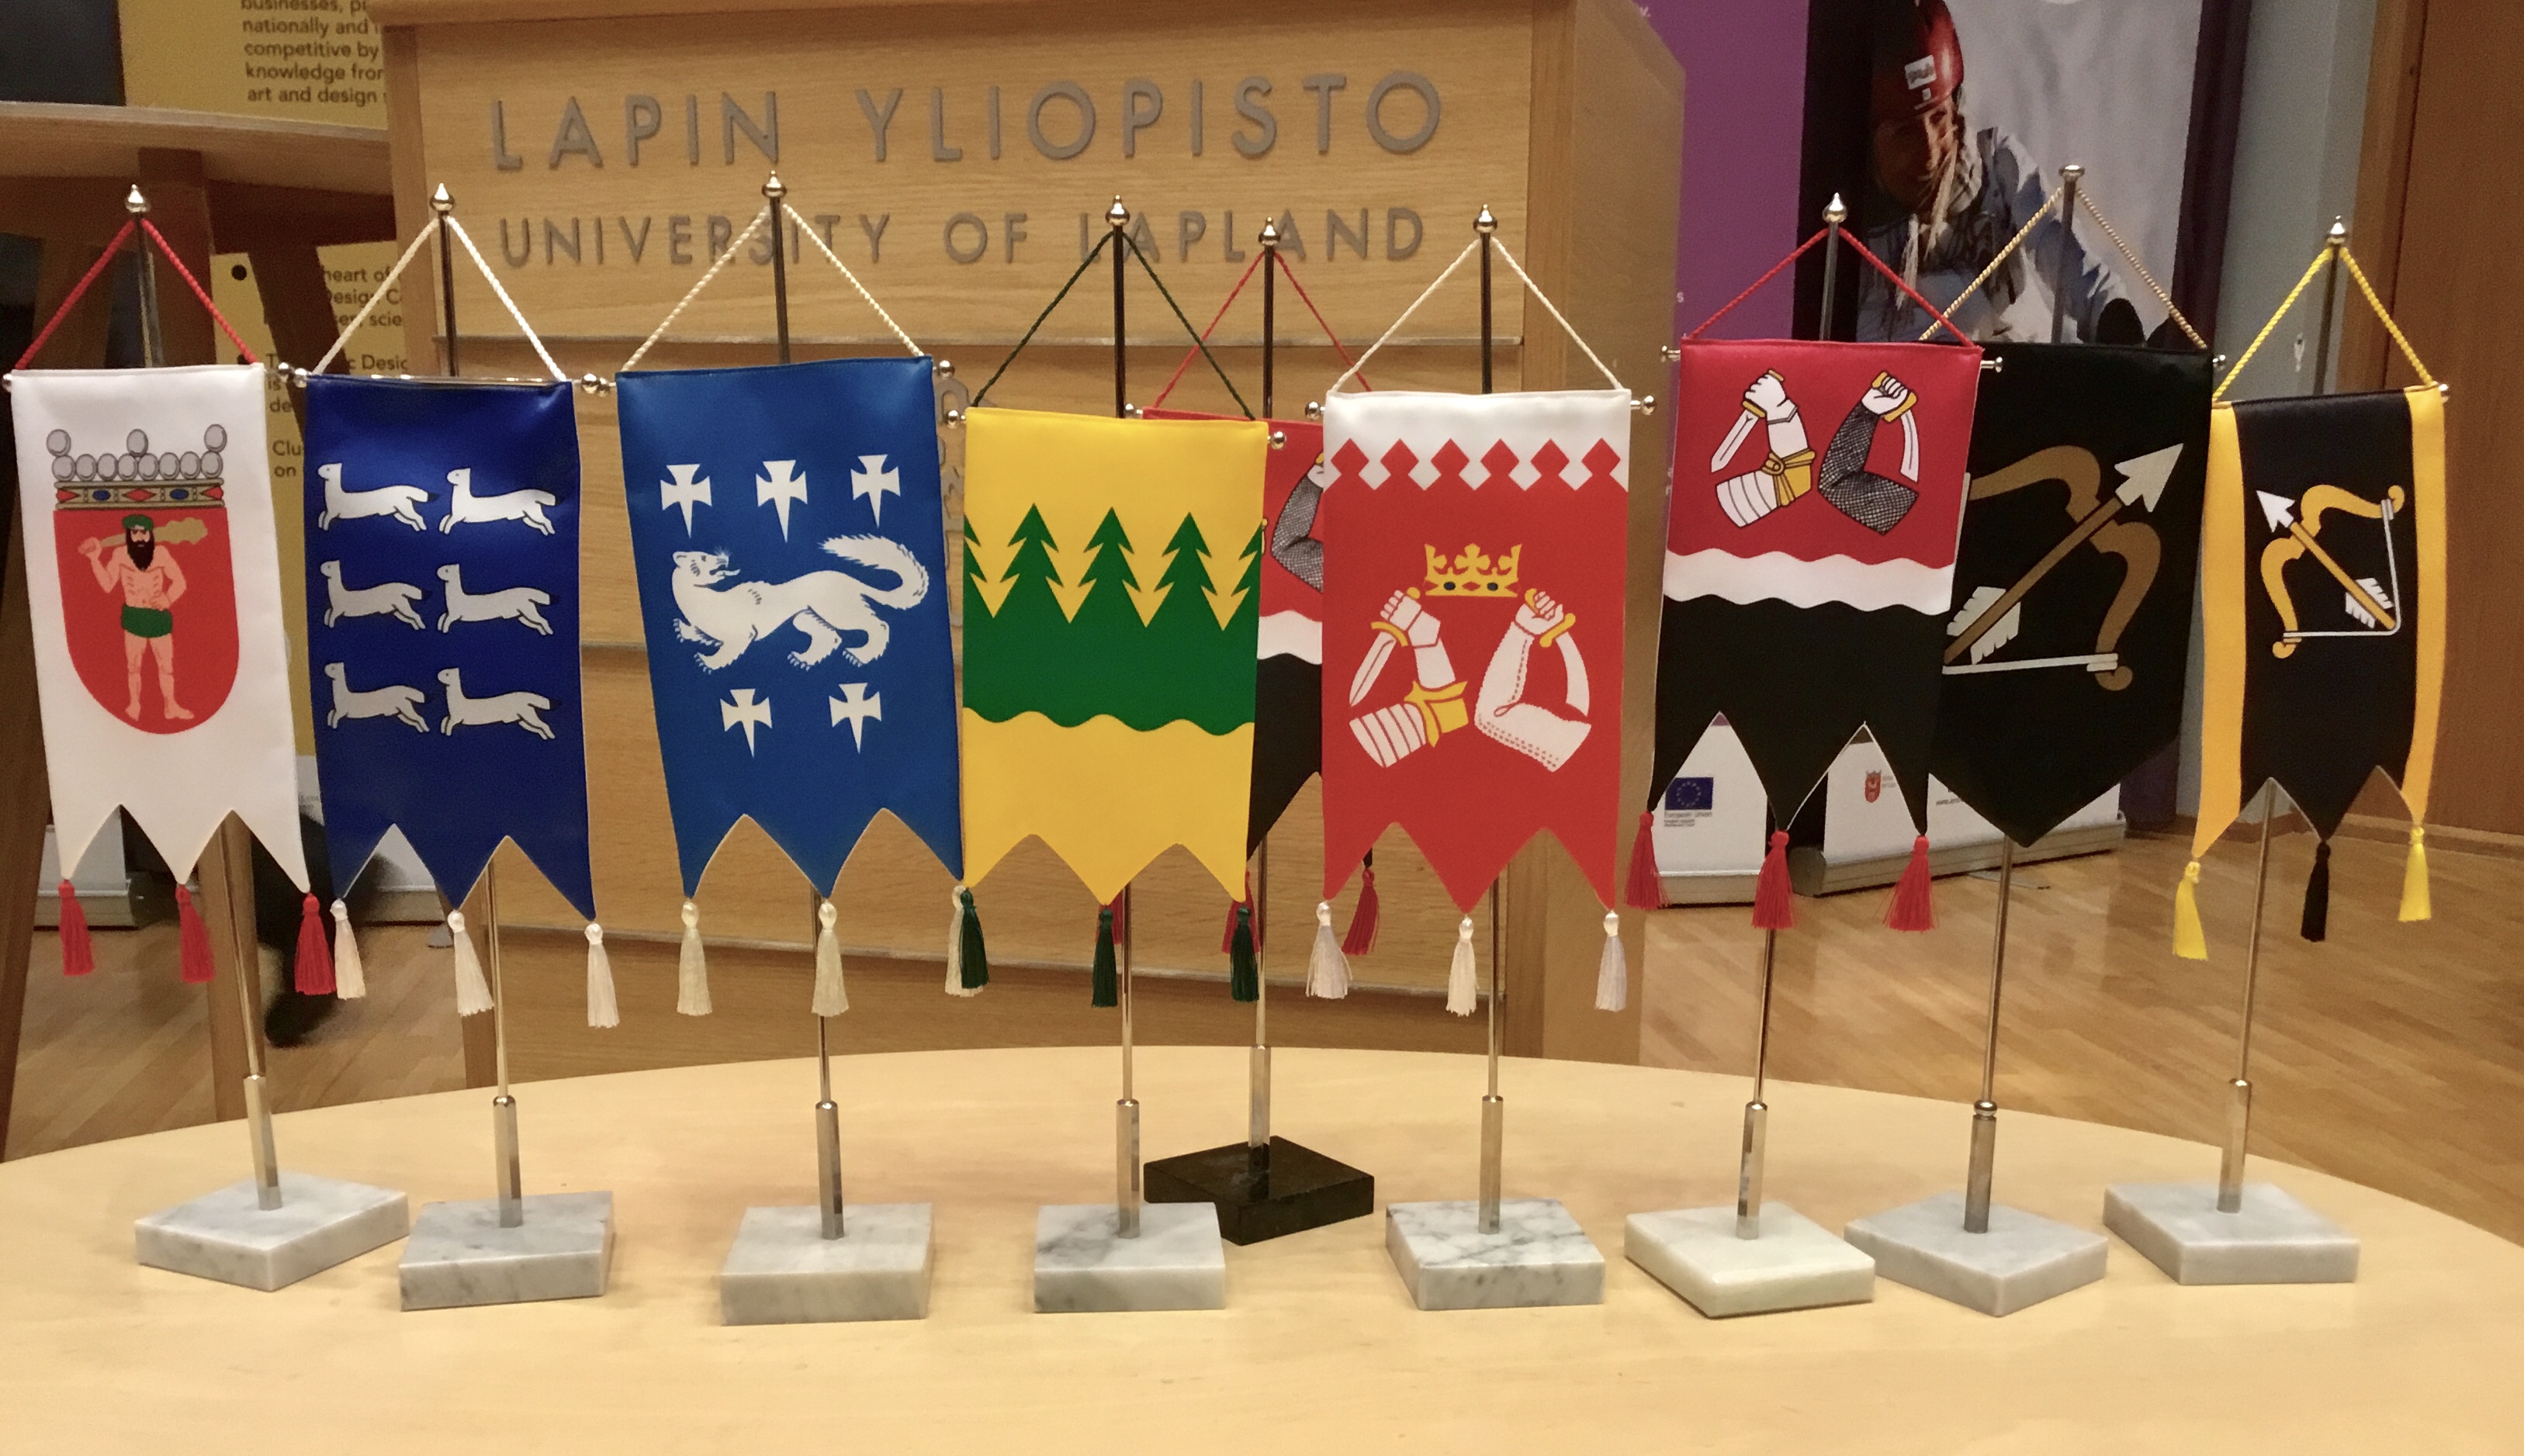 Itä- ja Pohjois-Suomen maakuntien huippukokous pidettiin Lapissa 30. - 31. elokuuta 2018 teemalla Iskukykyisiä yhdessä. Mukana olivat Lapin lisäksi Pohjois-Pohjanmaa, Keski-Pohjanmaa, Kainuu, Pohjois-Savo, Etelä-Savo, Pohjois-Karjala ja Etelä-Karjala. 